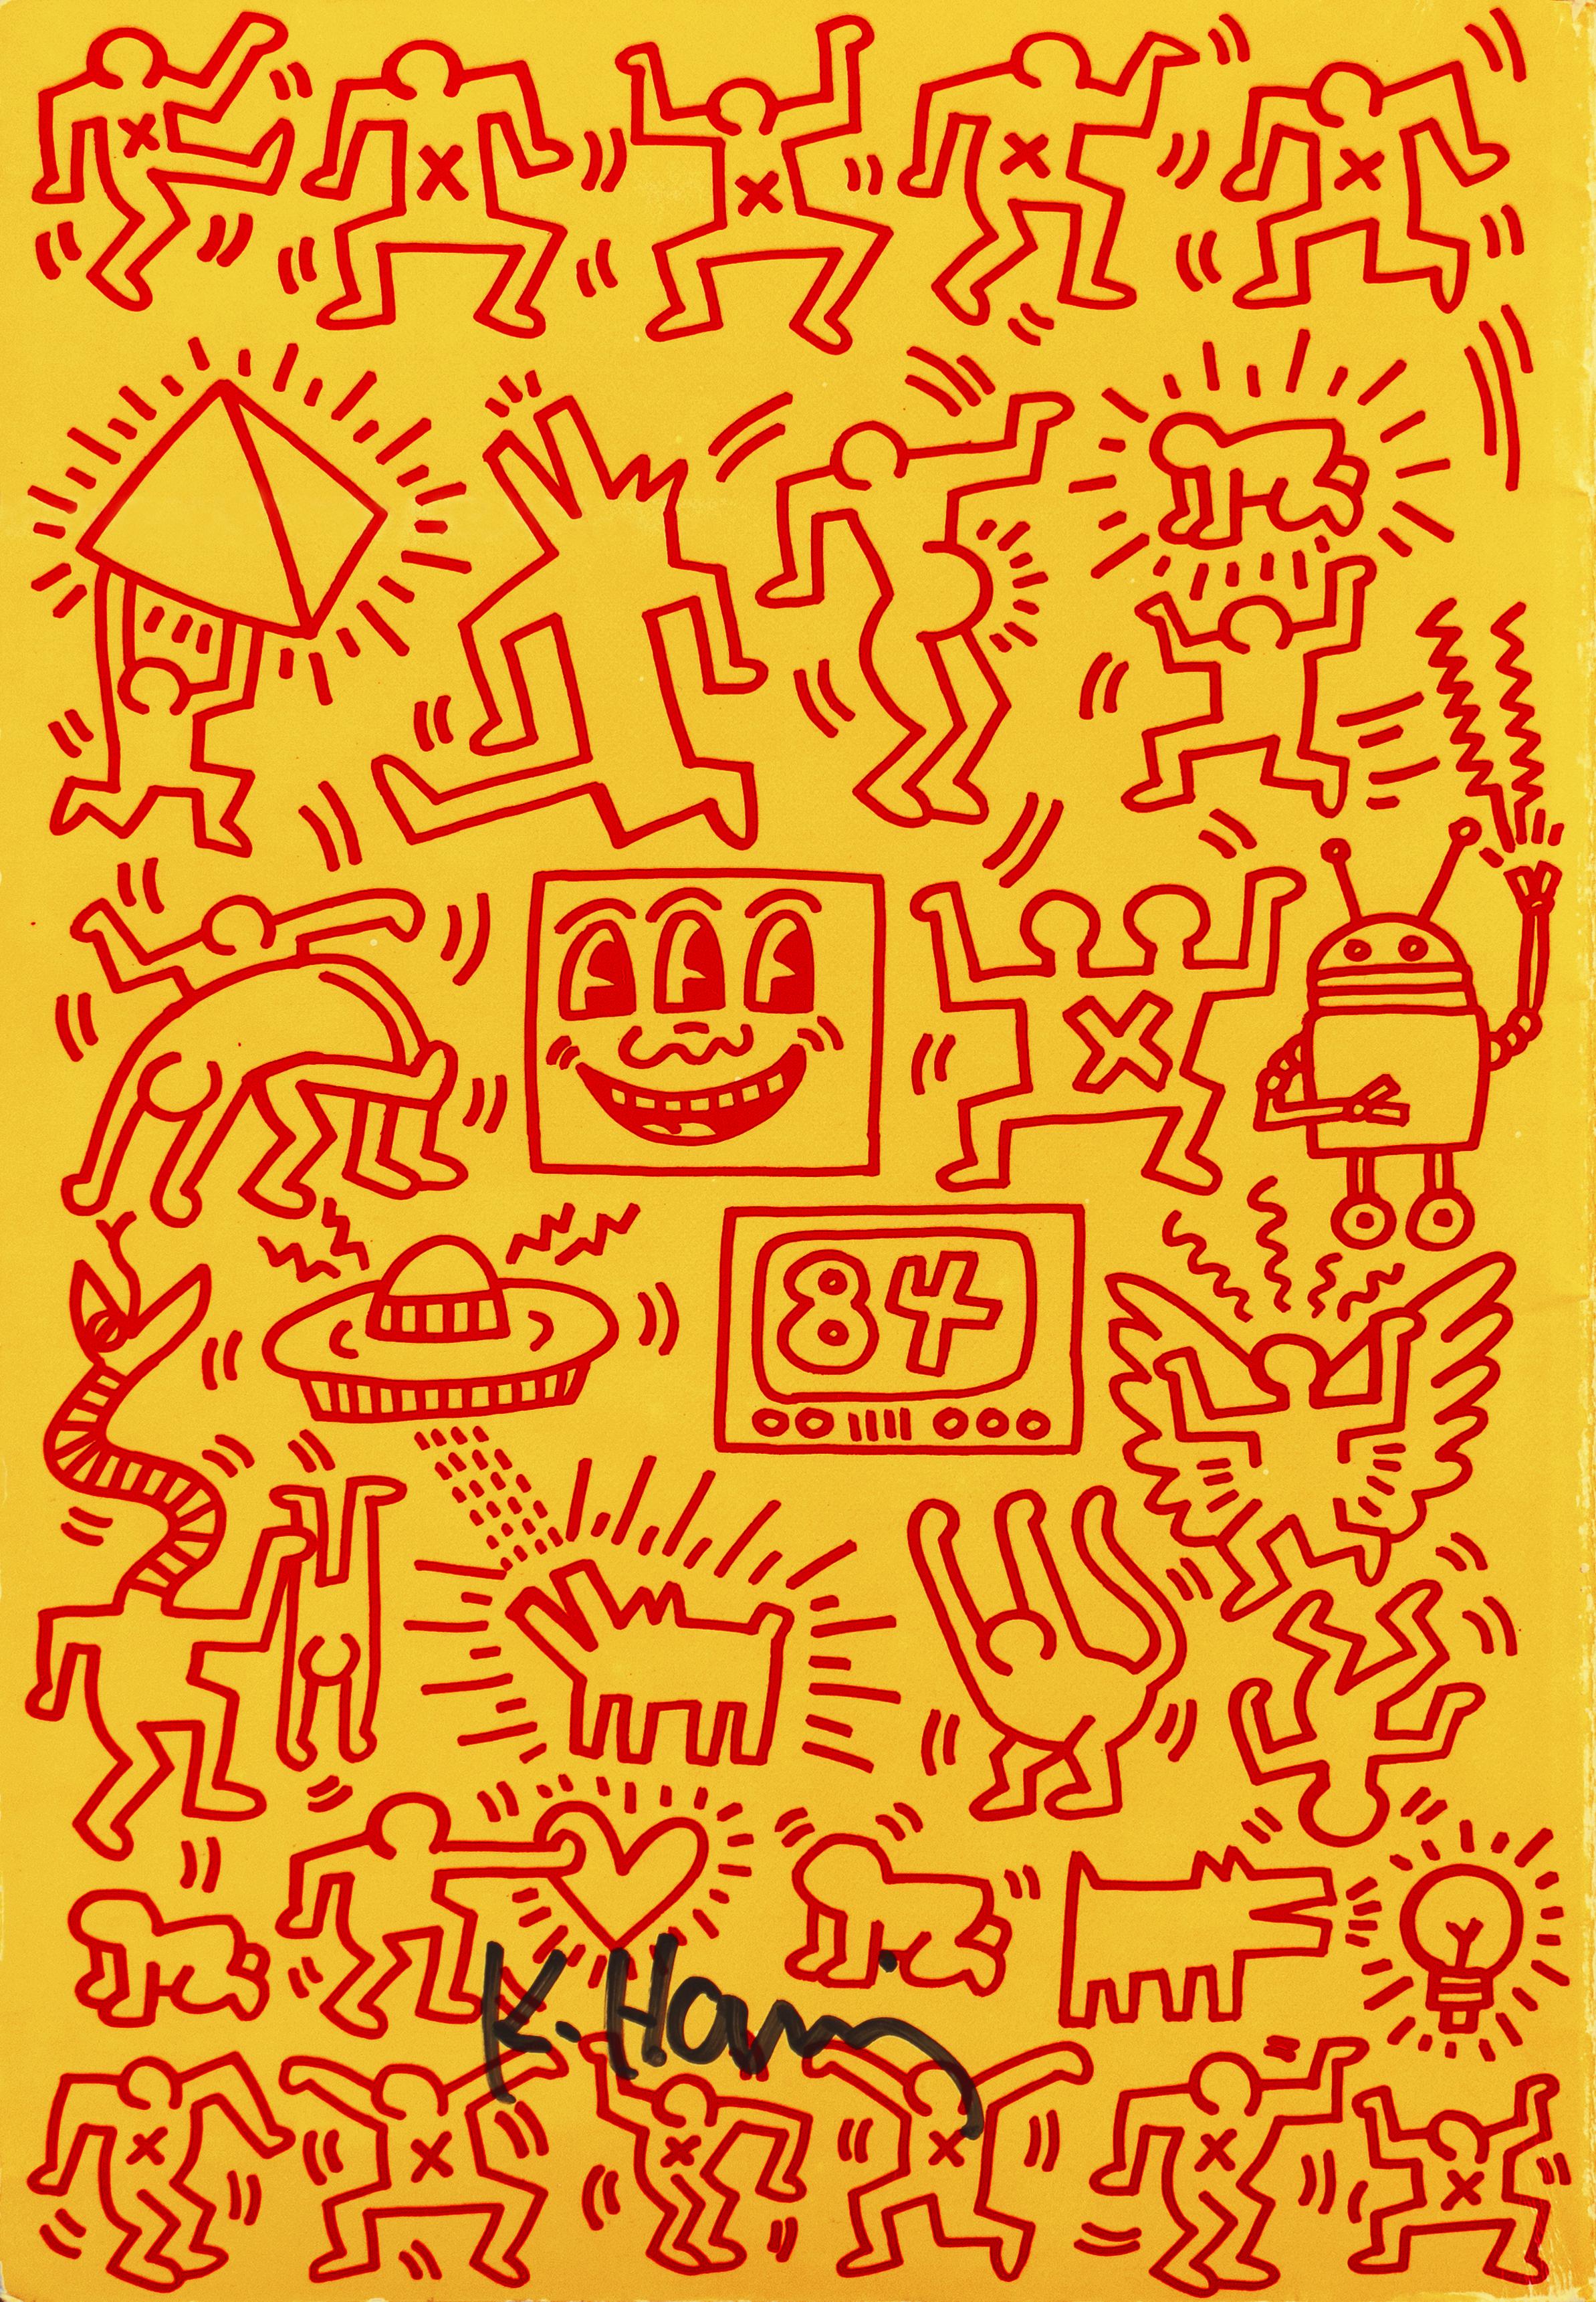 „Art in Transit“, handsigniert von Haring, Subway-Zeichnungen, New York, Pop Art – Print von Keith Haring